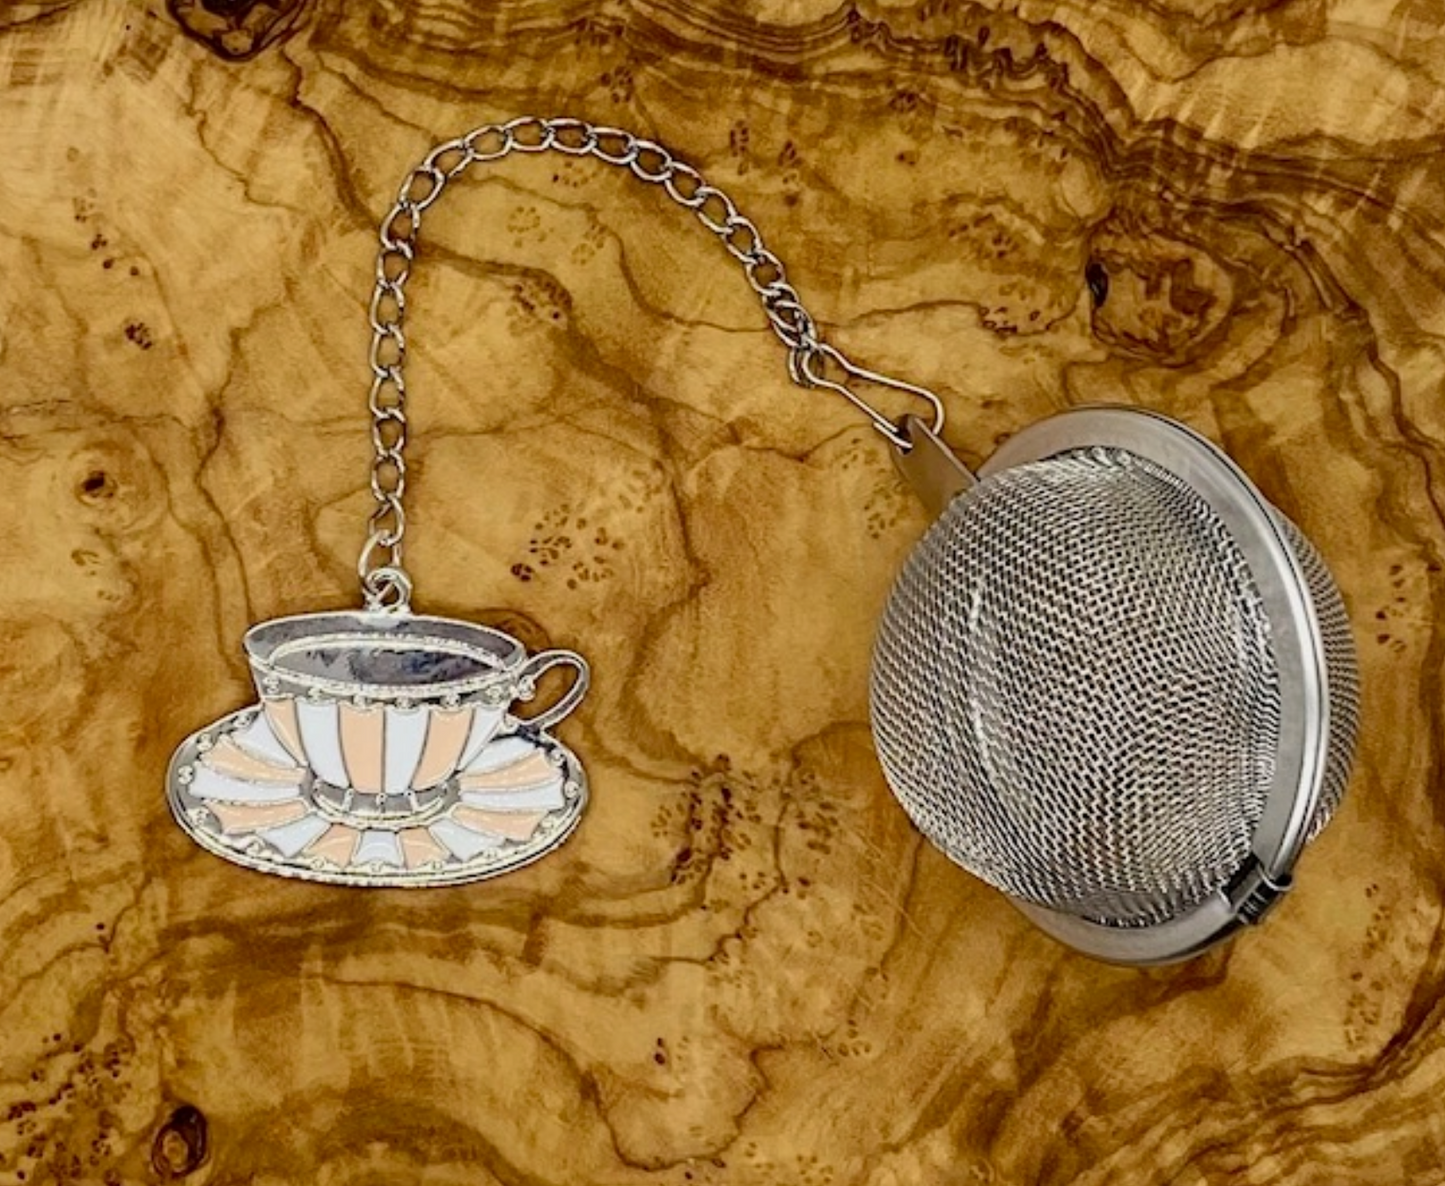 Loose Leaf Tea Infuser Ball, Tea Cup Charm